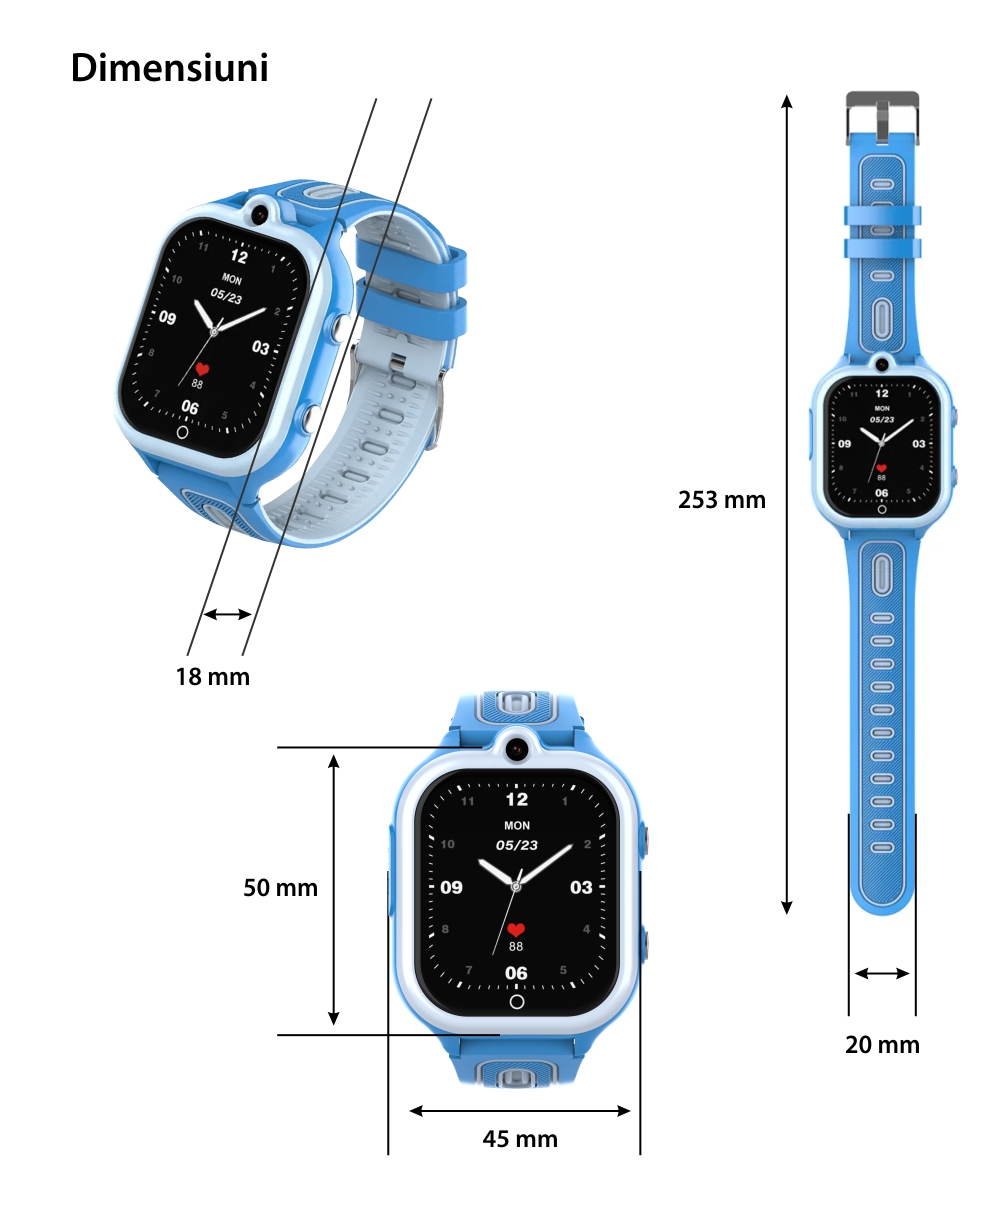 Ceas Smartwatch Pentru Copii Wonlex Wonlex KT29 cu Functie Telefon, Contacte, Wi-Fi, Bluetooth, Istoric apeluri, Camera, 4G, Albastru